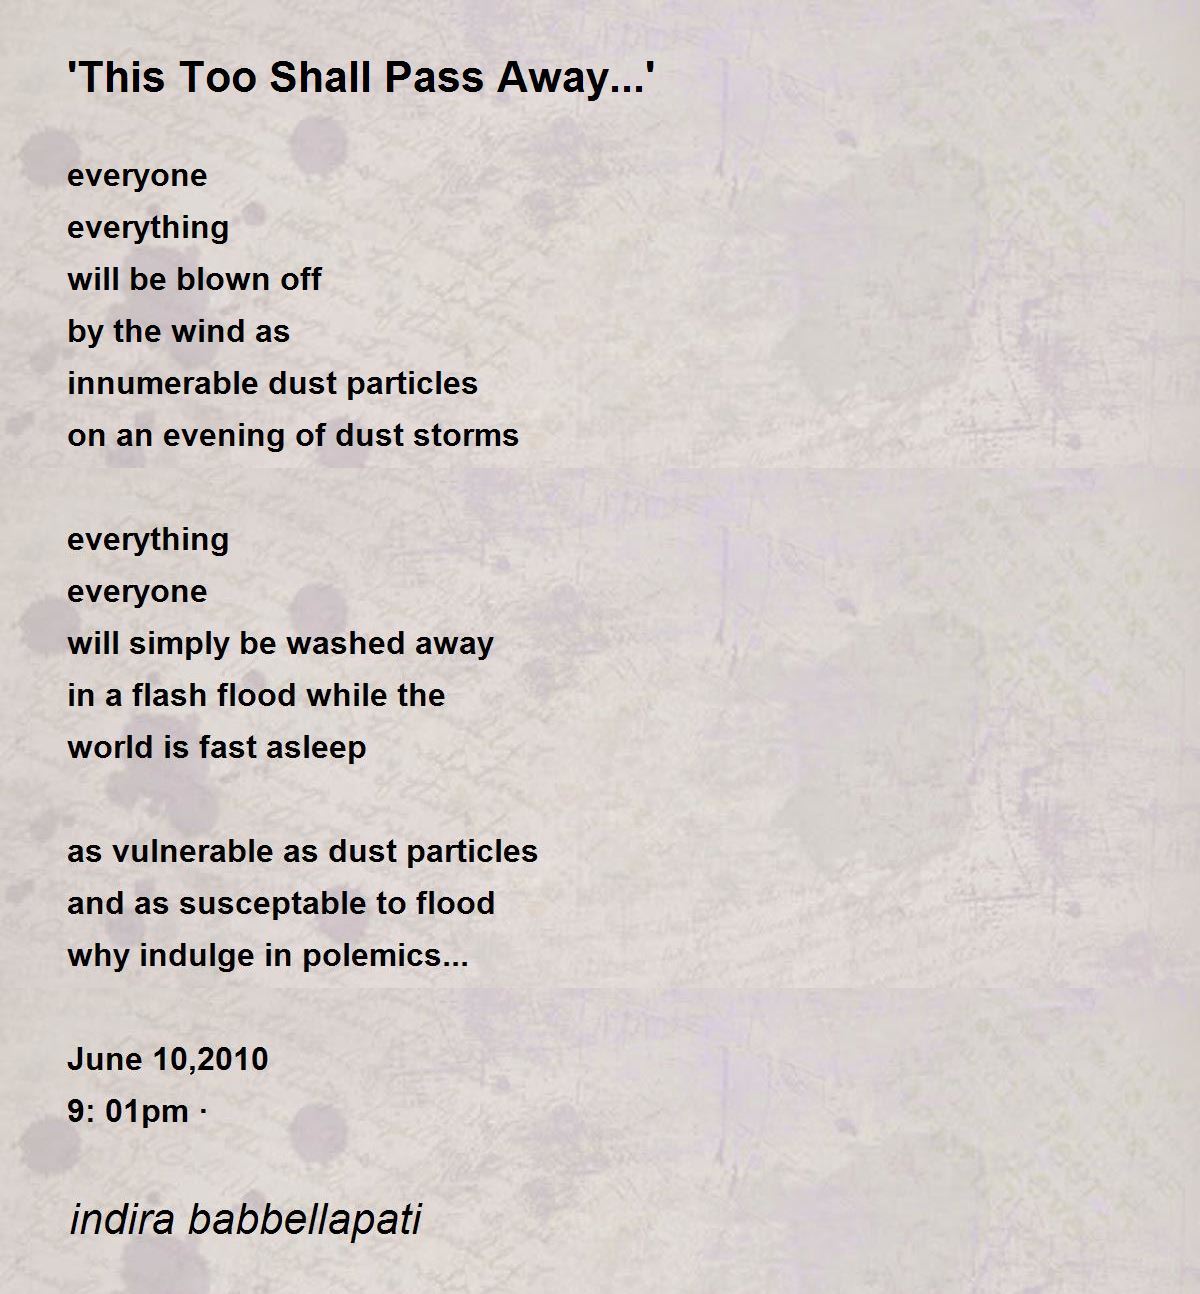 This Too Shall Pass Away...' - 'This Too Shall Pass Away...' Poem ...